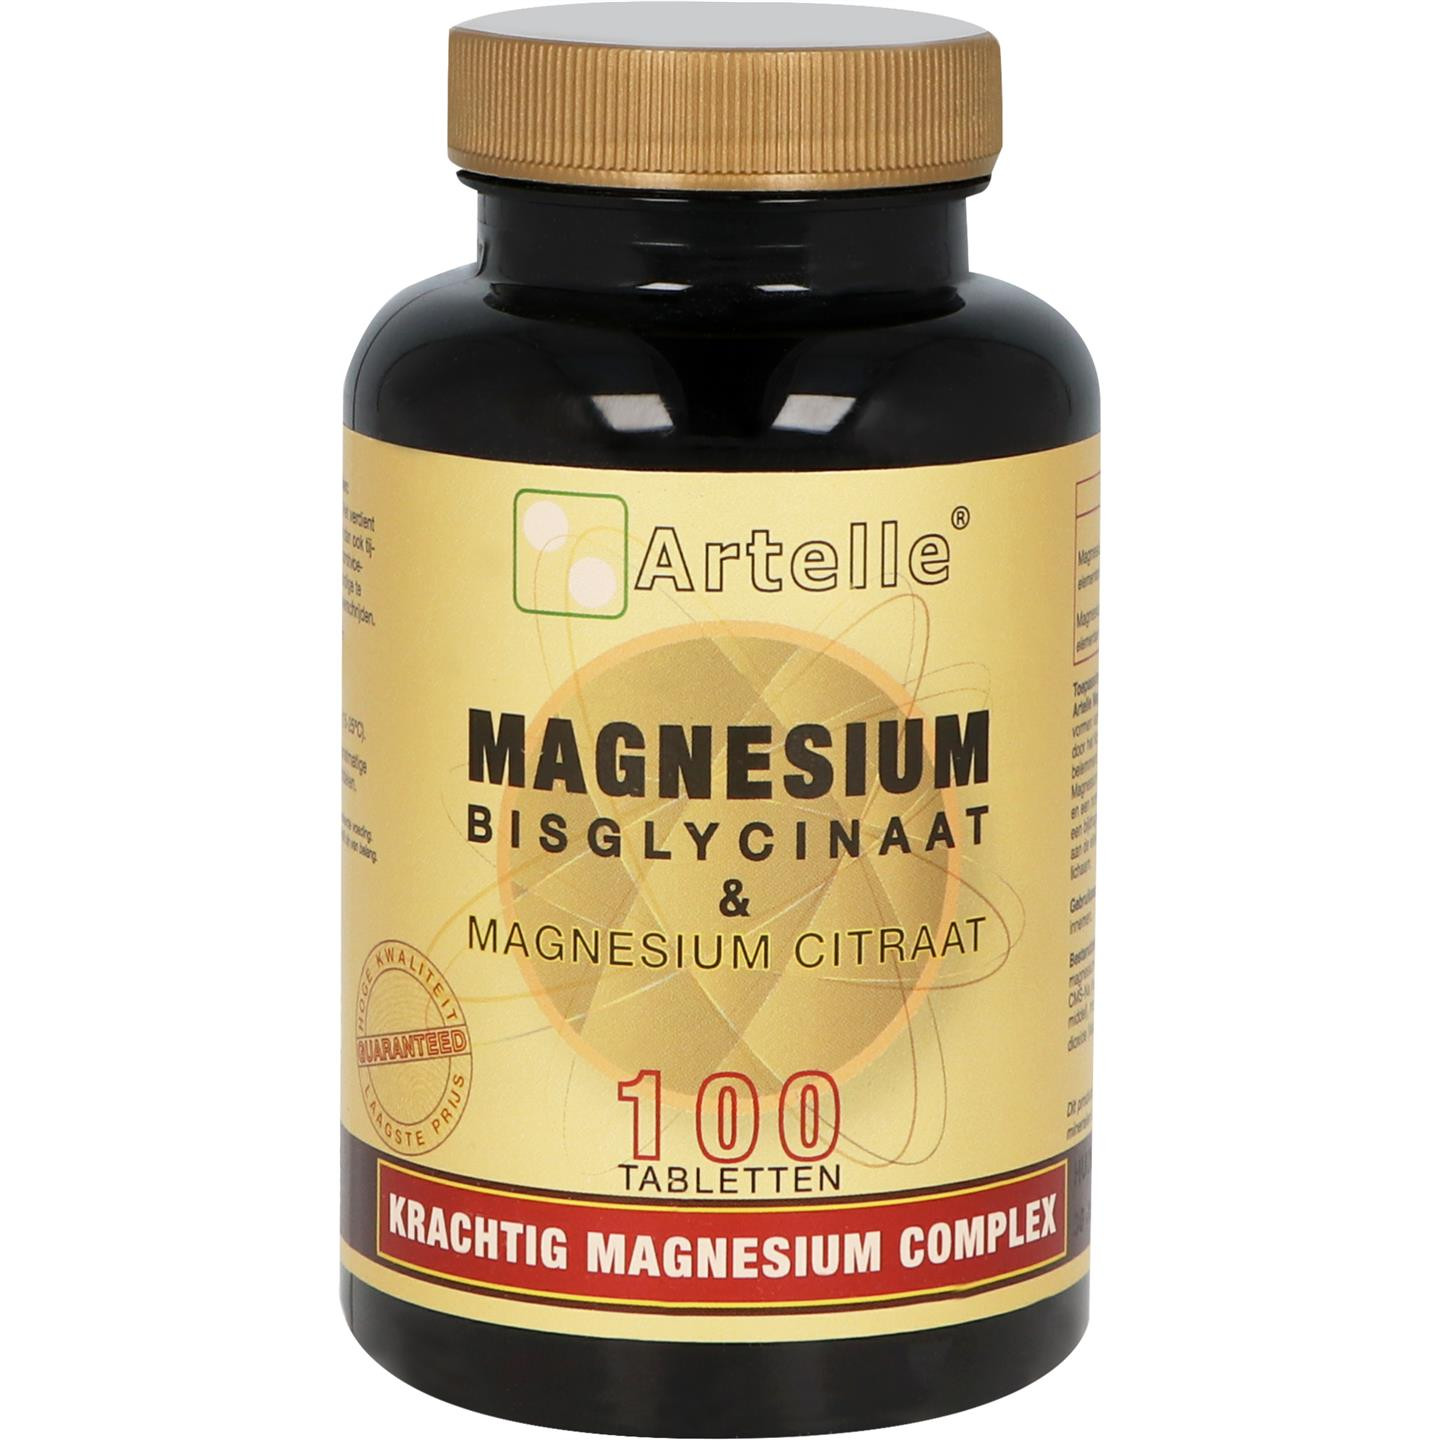 Magnesium Bisglycinaat & Magnesium Citraat